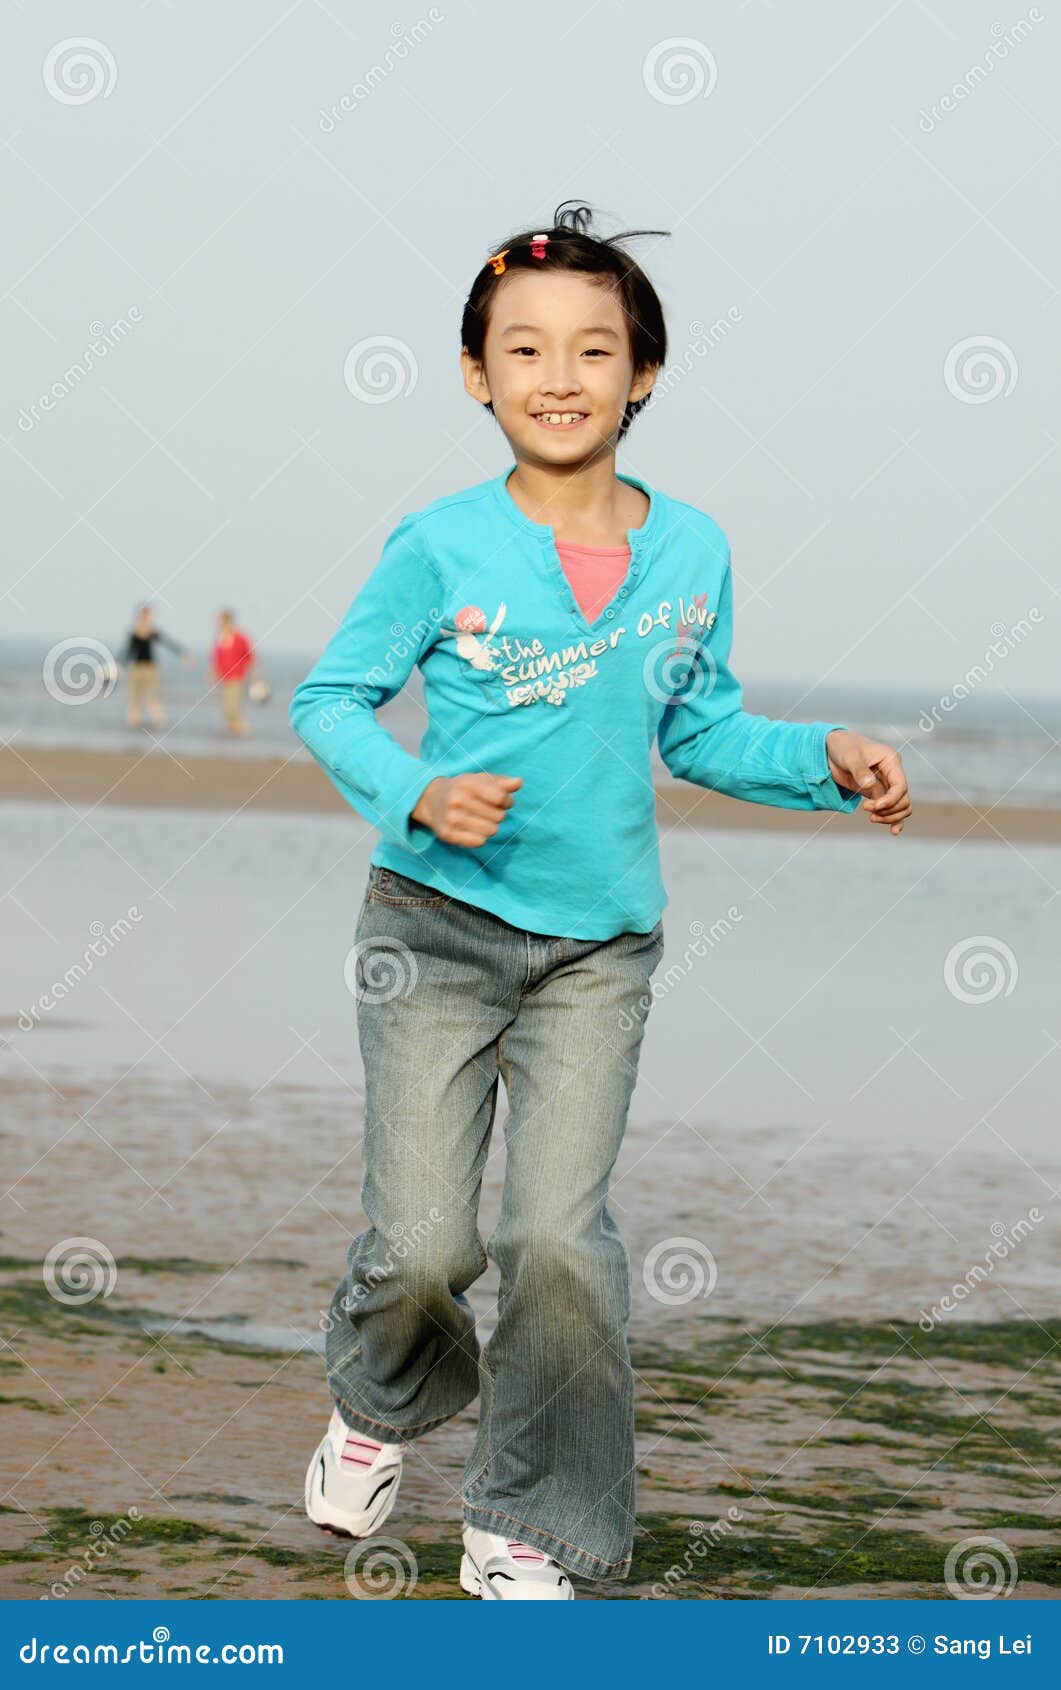 Chinese child stock image. Image of park, eyes, child - 7102933